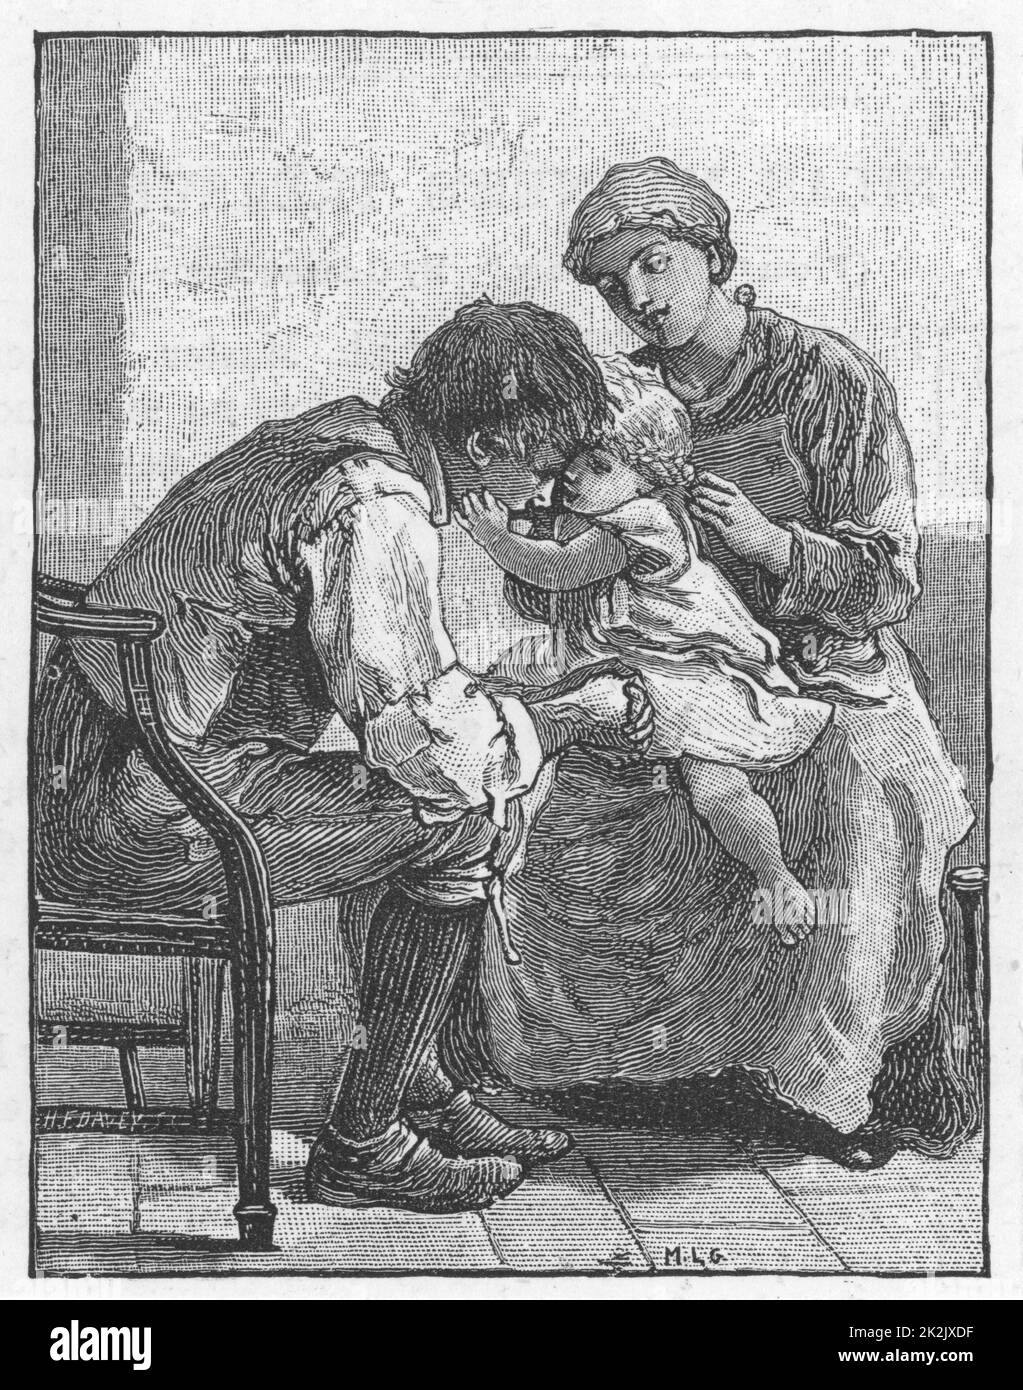 'silas Marner' par George Eliot, 1861. Eppie l'orphelin, montrant Silas Marner, le tisserand, à quel point elle l'aime. Illustration de Mary L. Gow (1851-1929) publiée en 1882. Banque D'Images